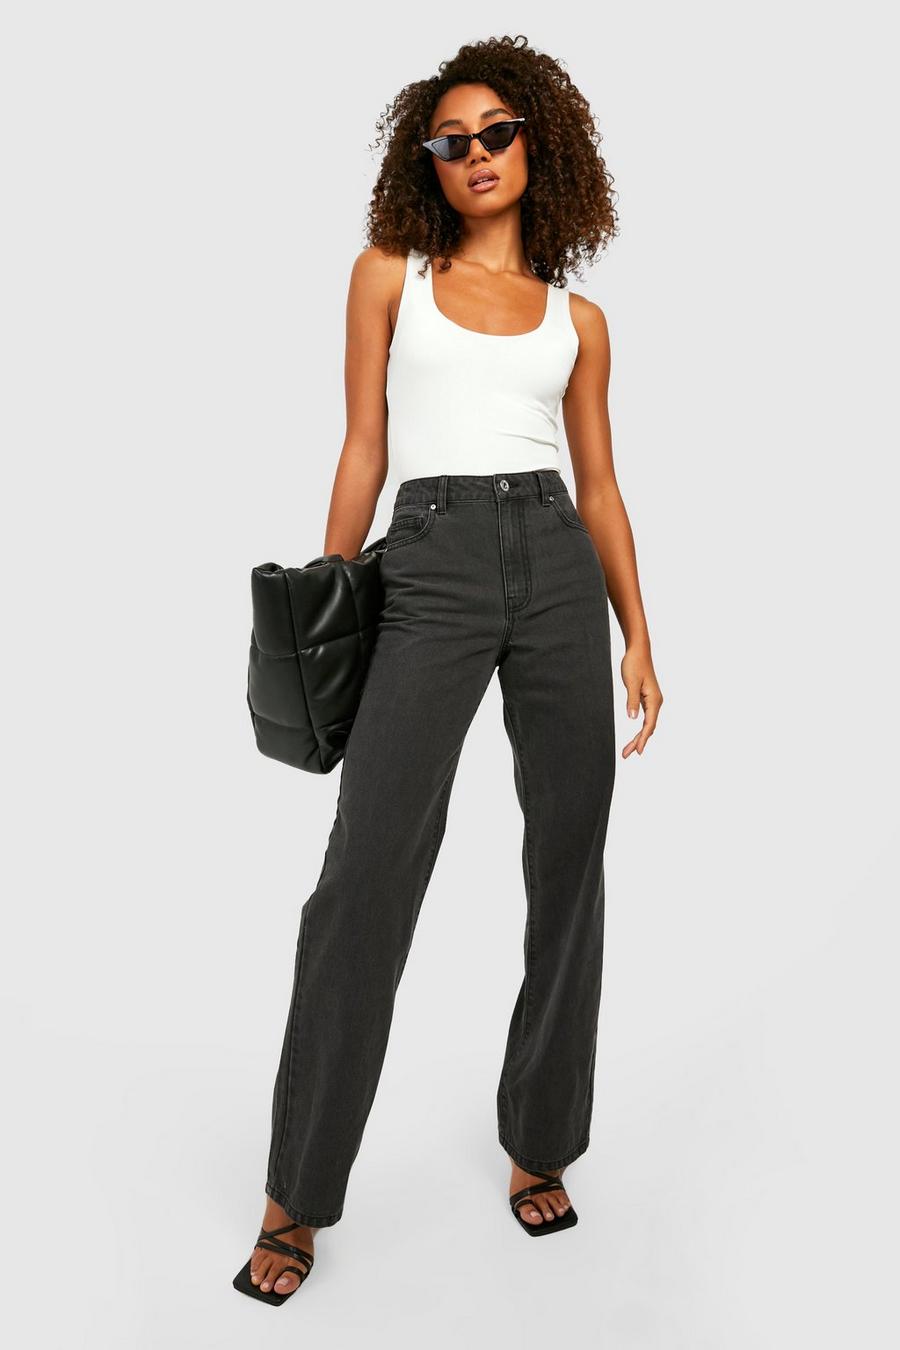 שחור דהוי מכנסי ג'ינס בגזרת בויפרנד משוחררת Low Rise, לנשים גבוהות image number 1